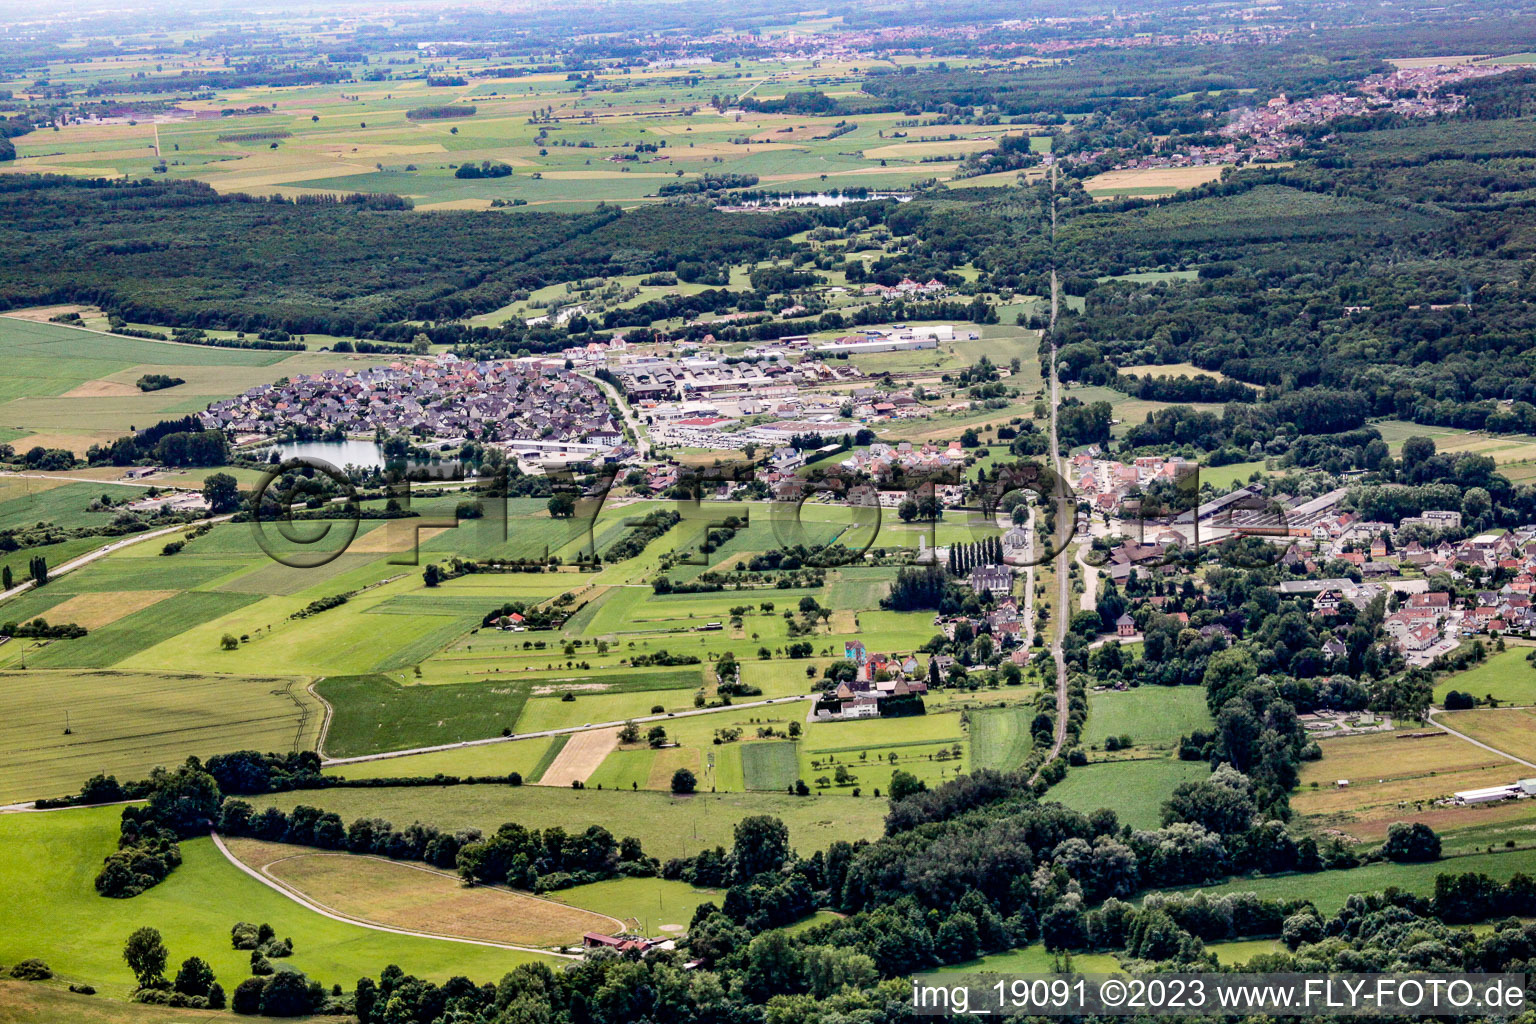 Vue aérienne de Rountzenheim dans le département Bas Rhin, France